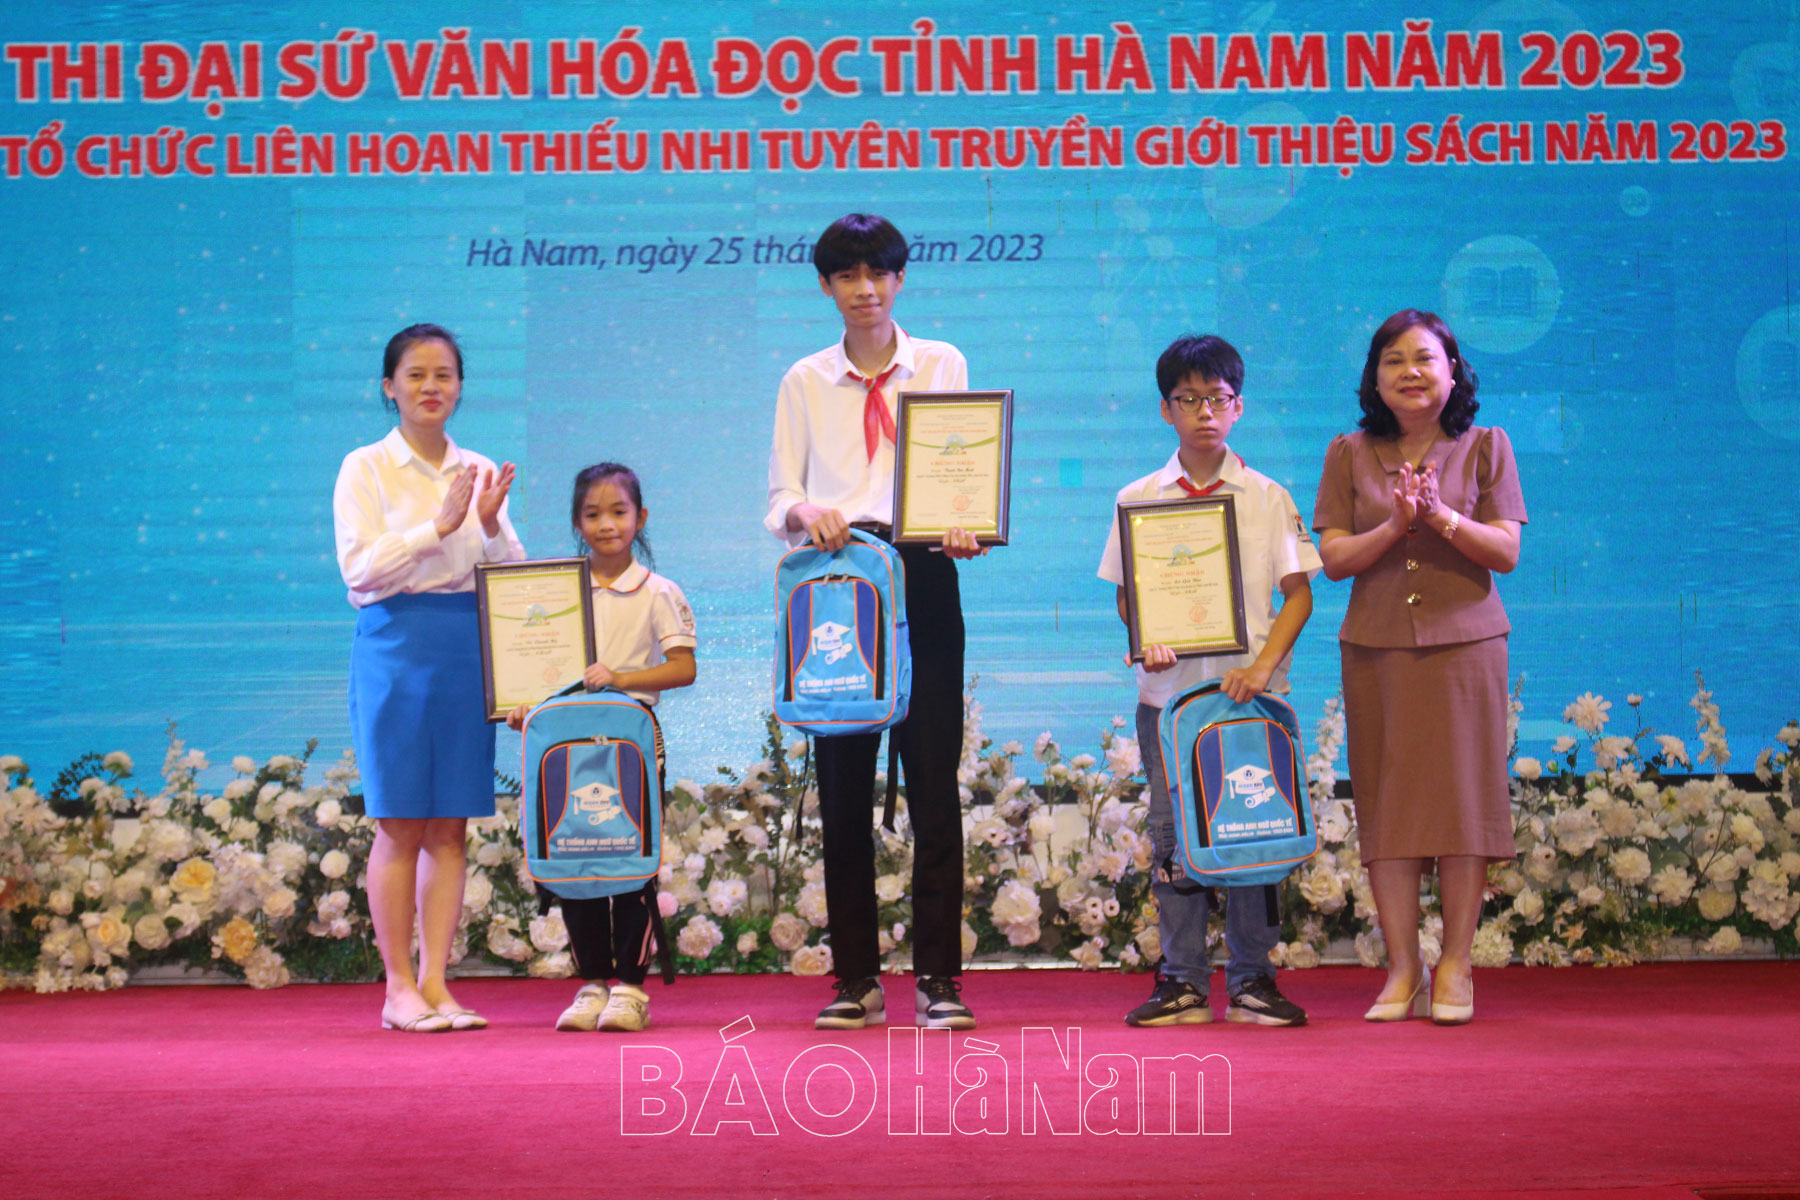 Tổng kết Cuộc thi Đại sứ văn hóa đọc tỉnh Hà Nam năm 2023 - Ảnh 1.